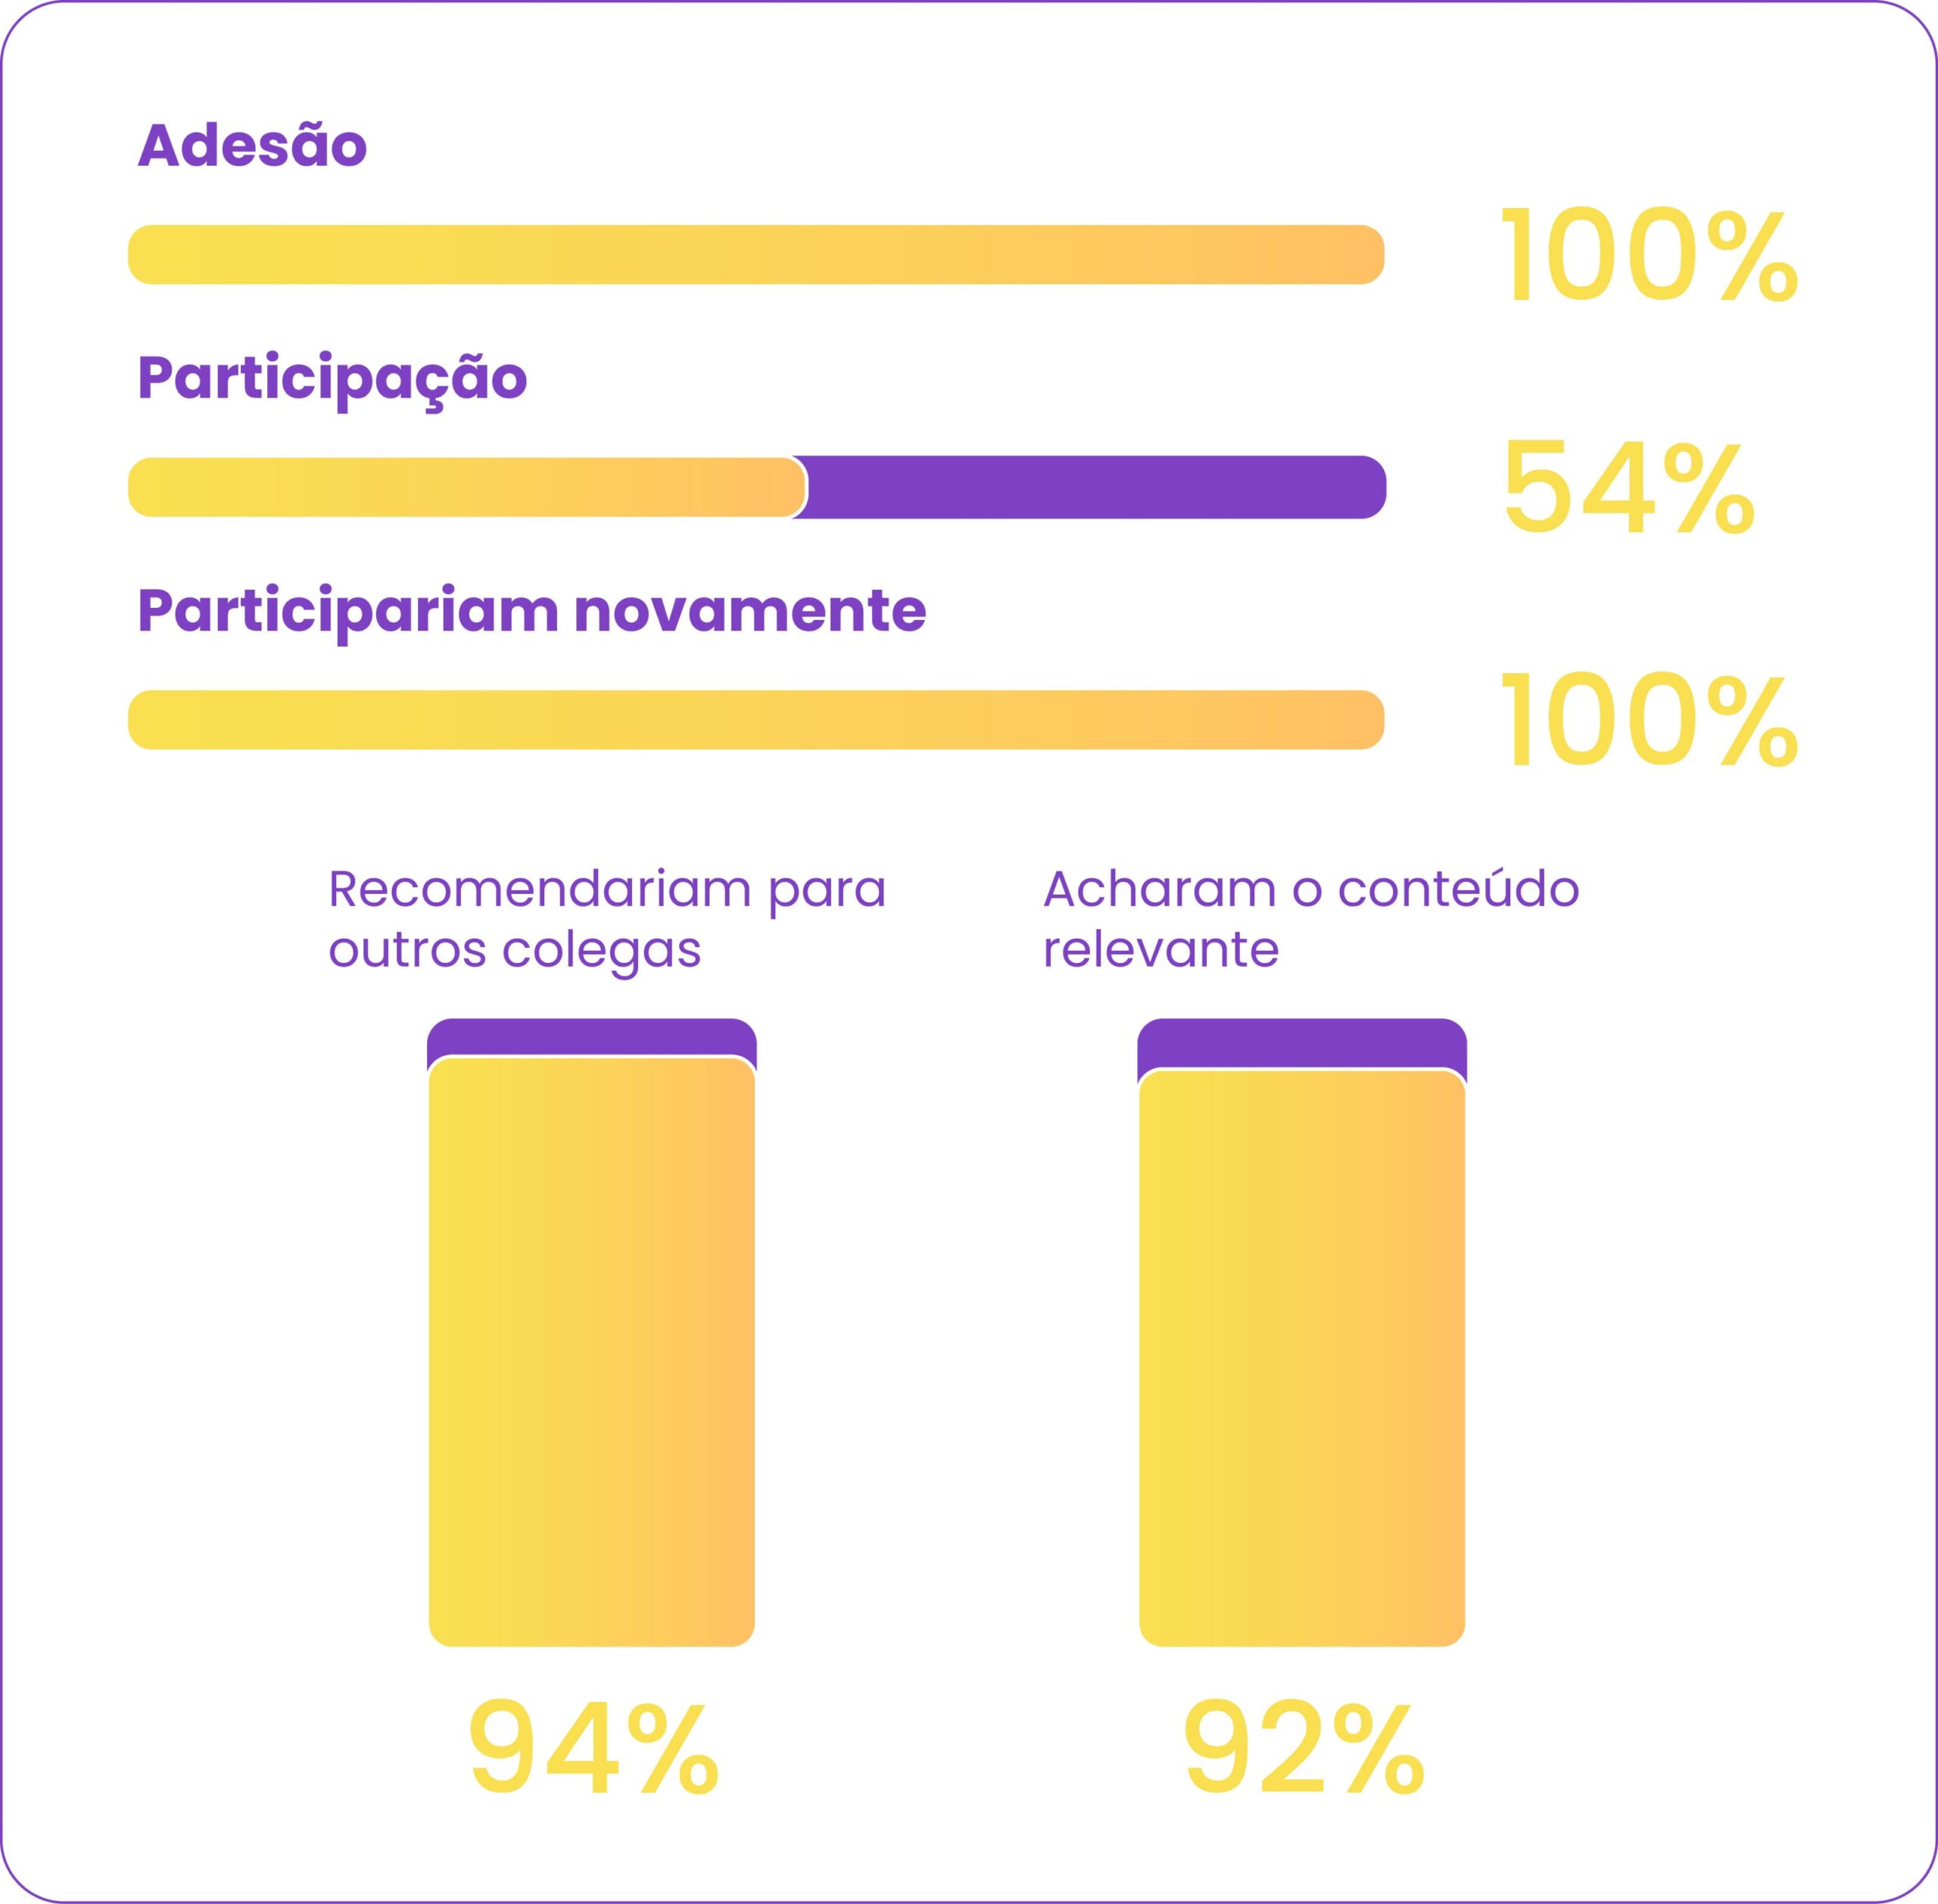 Estatisticas:
Adesão - 100%
Participação - 100%
Participariam novamente - 100%
Recomendariam para outros colegas - 94%
Acharam o conteúdo relevante - 92%